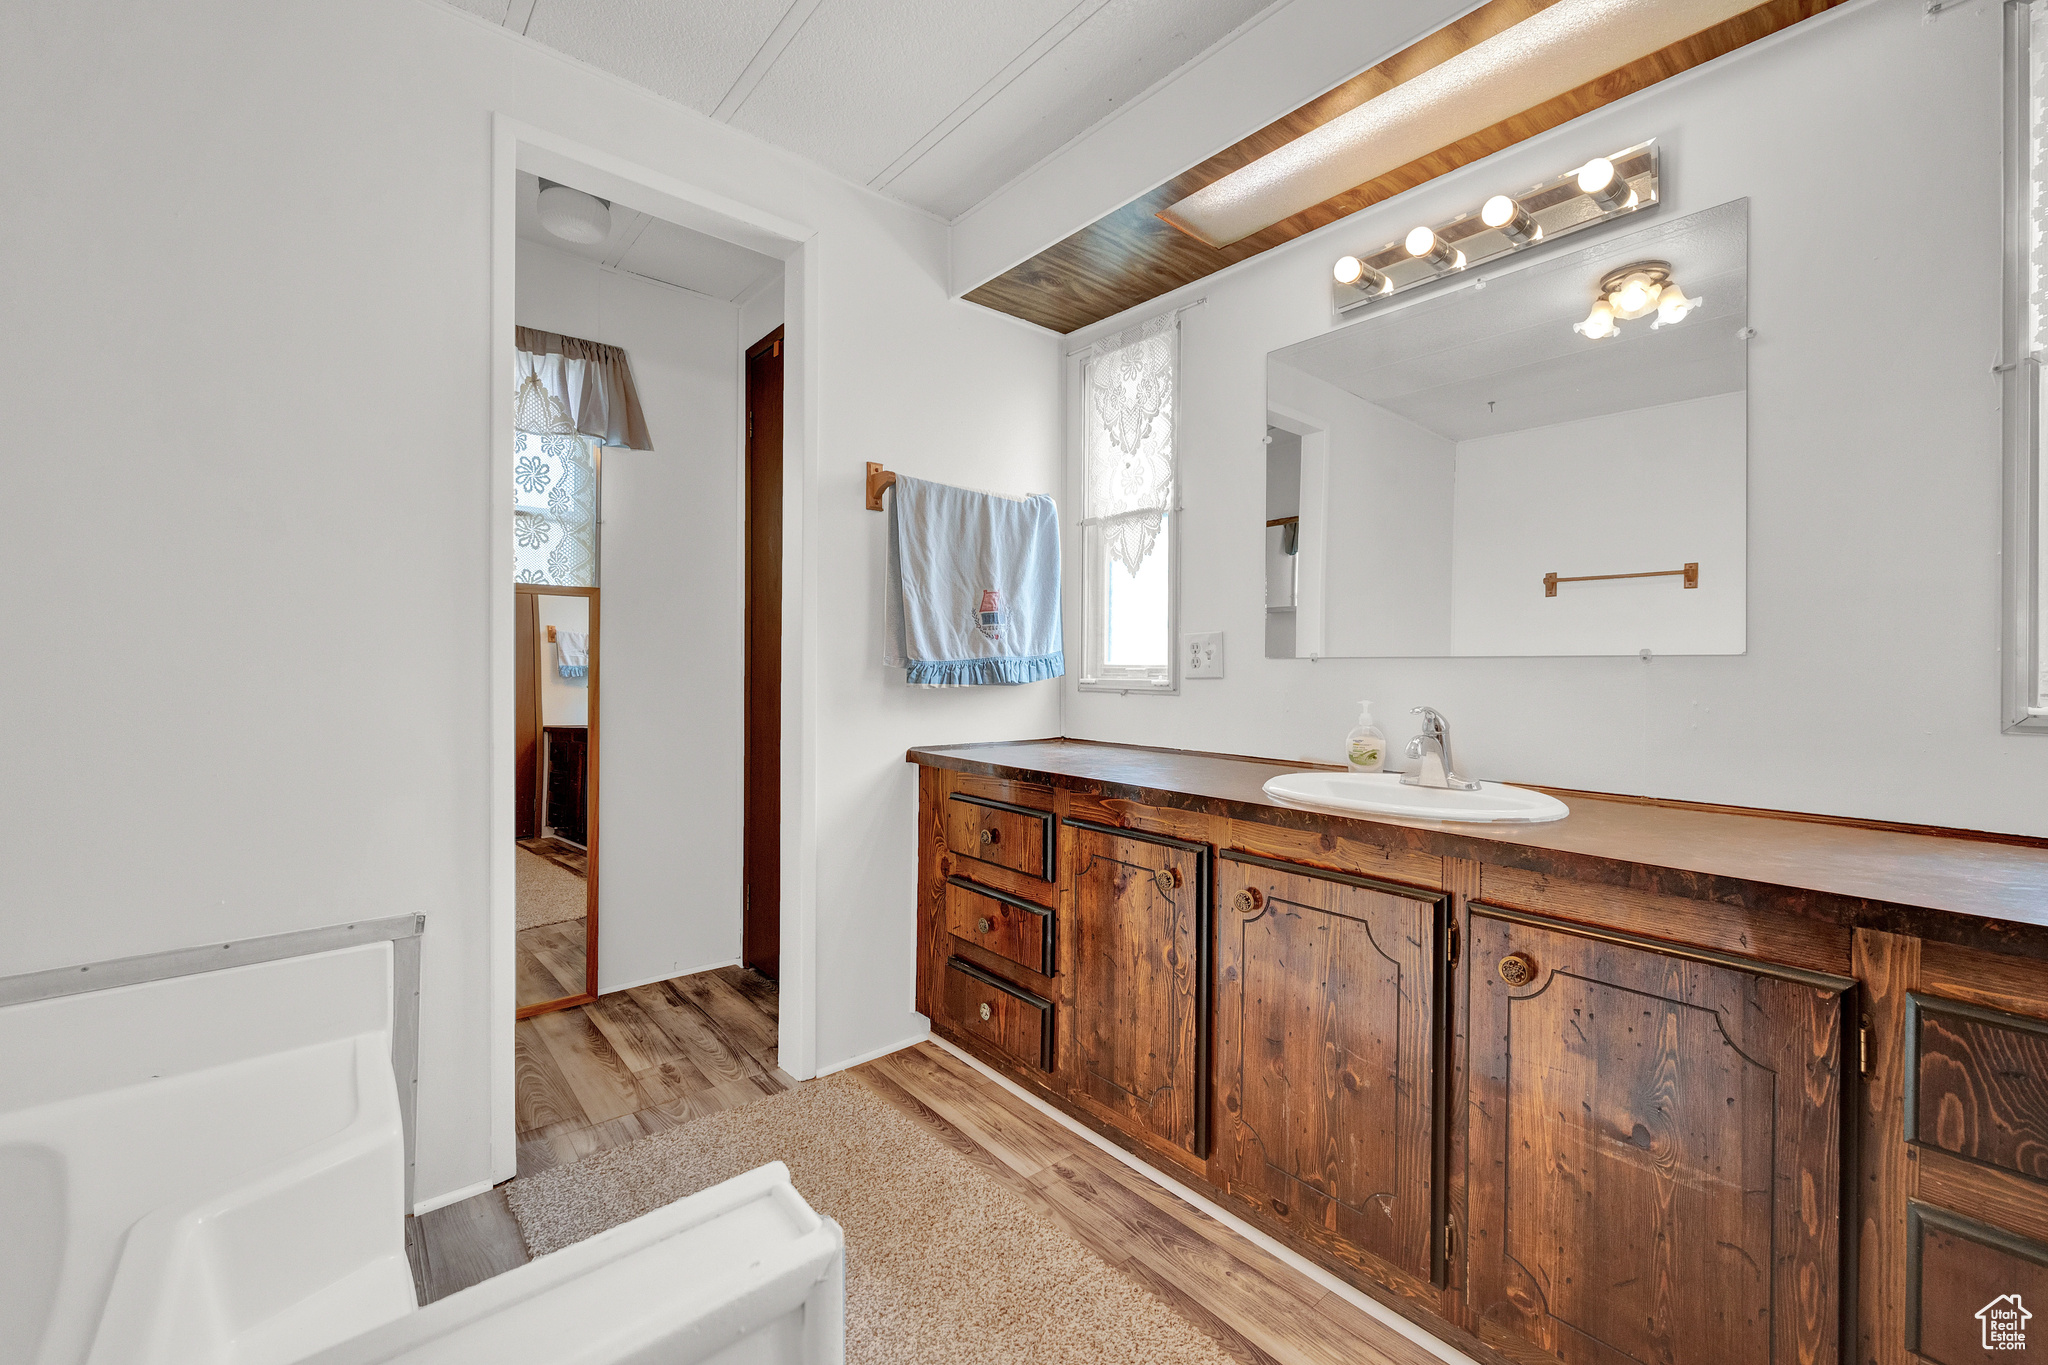 Bathroom featuring hardwood / wood-style flooring, a bathtub, and large vanity